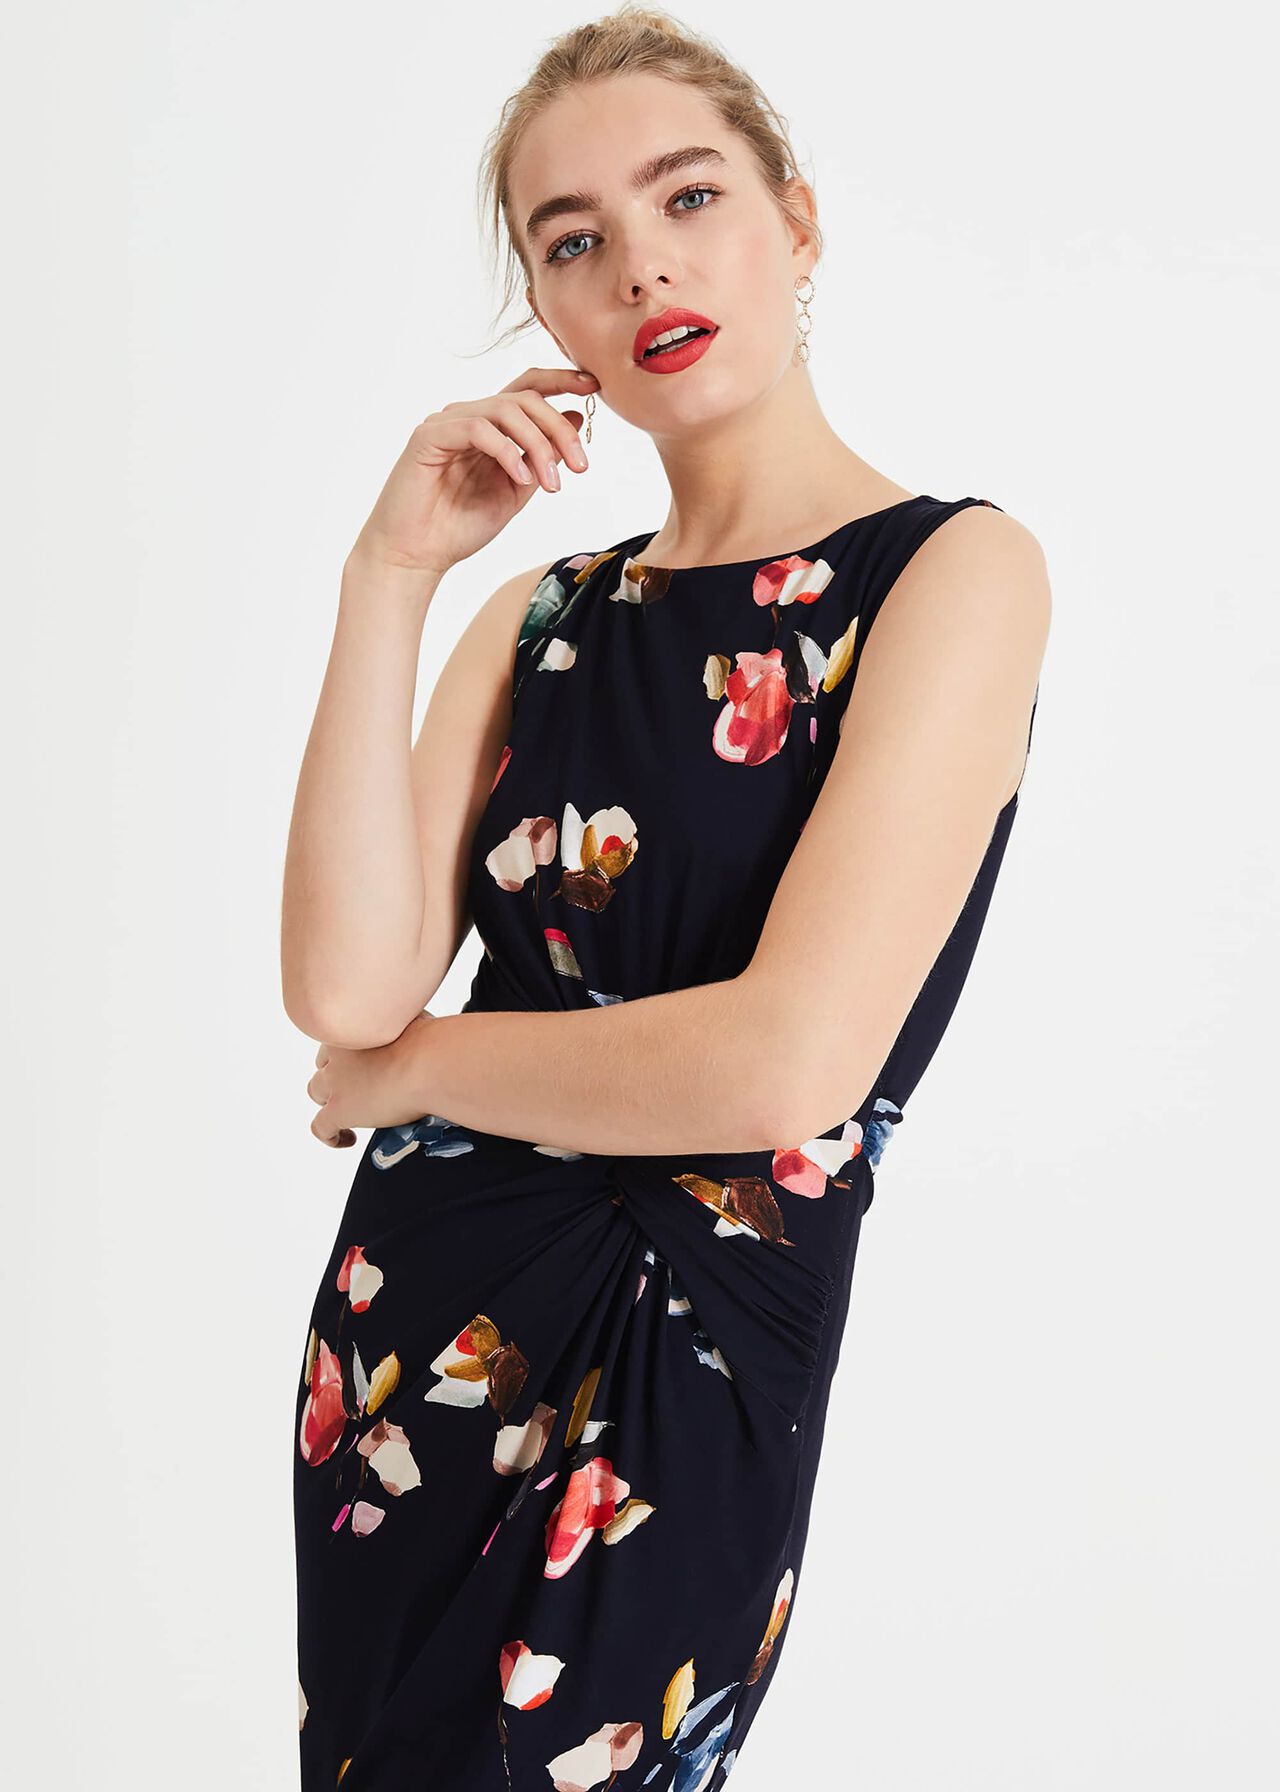 Berdina Floral Jersey Dress